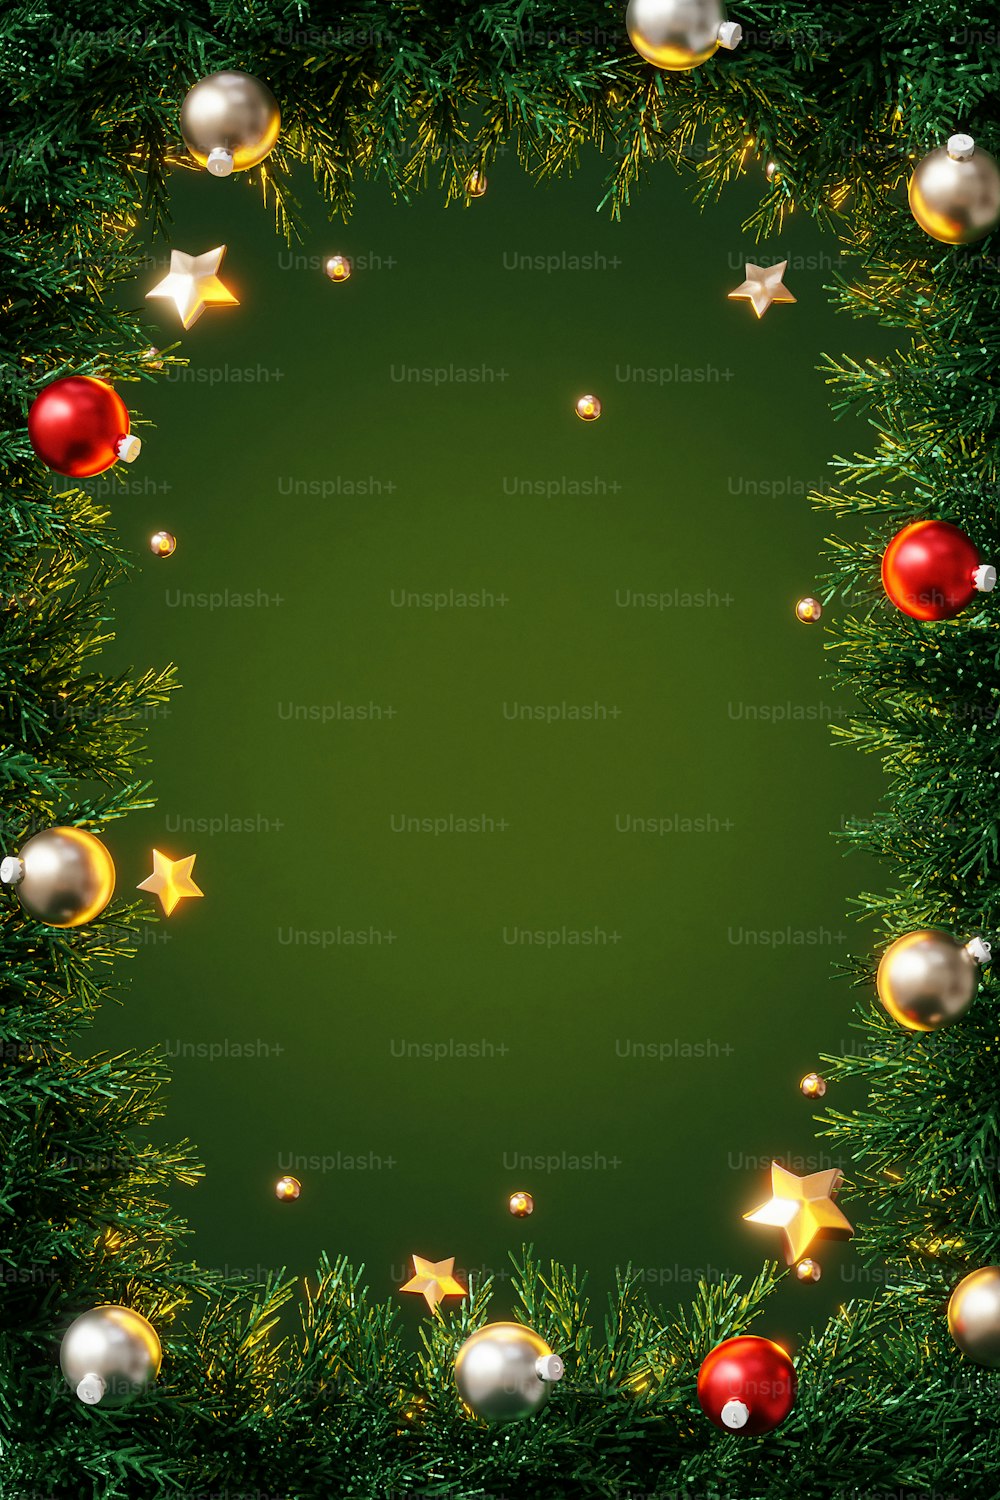 Un fond vert avec des ornements de Noël et des étoiles